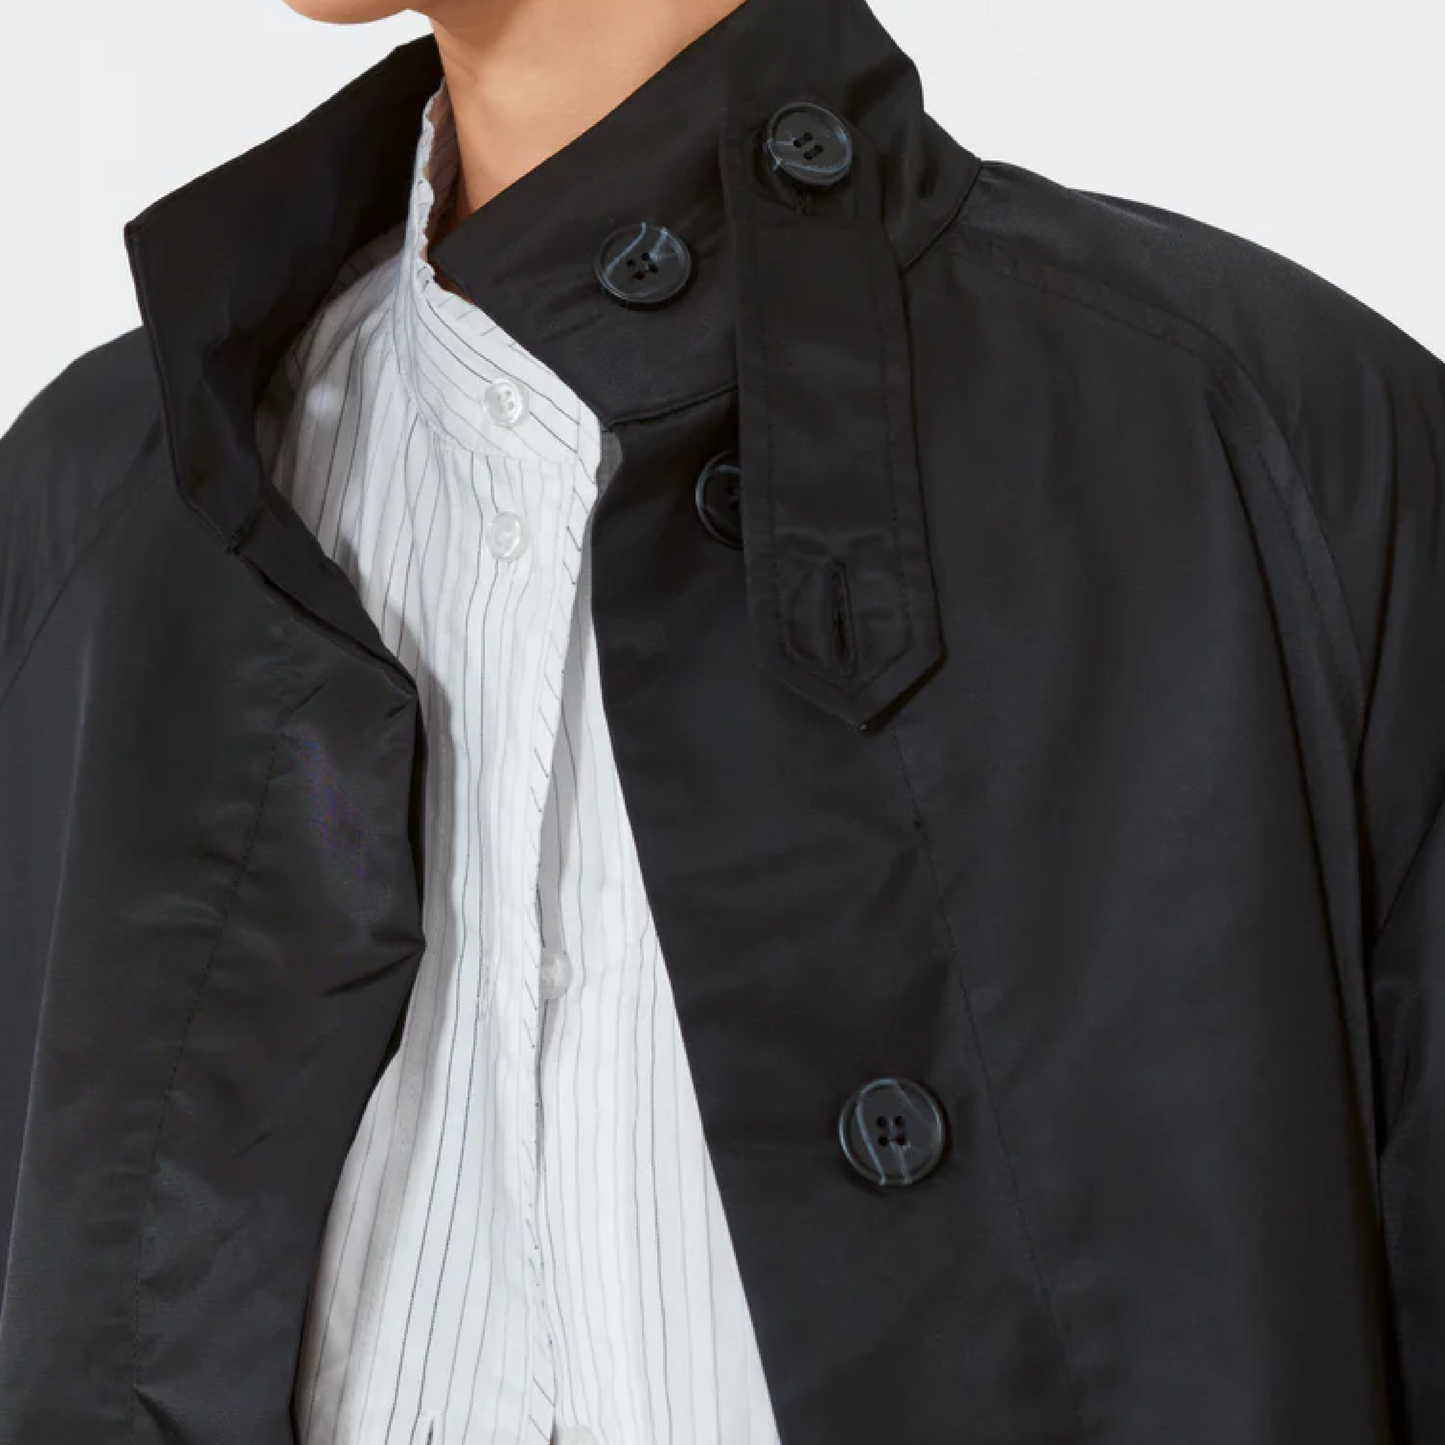 Kimora Coat, Black